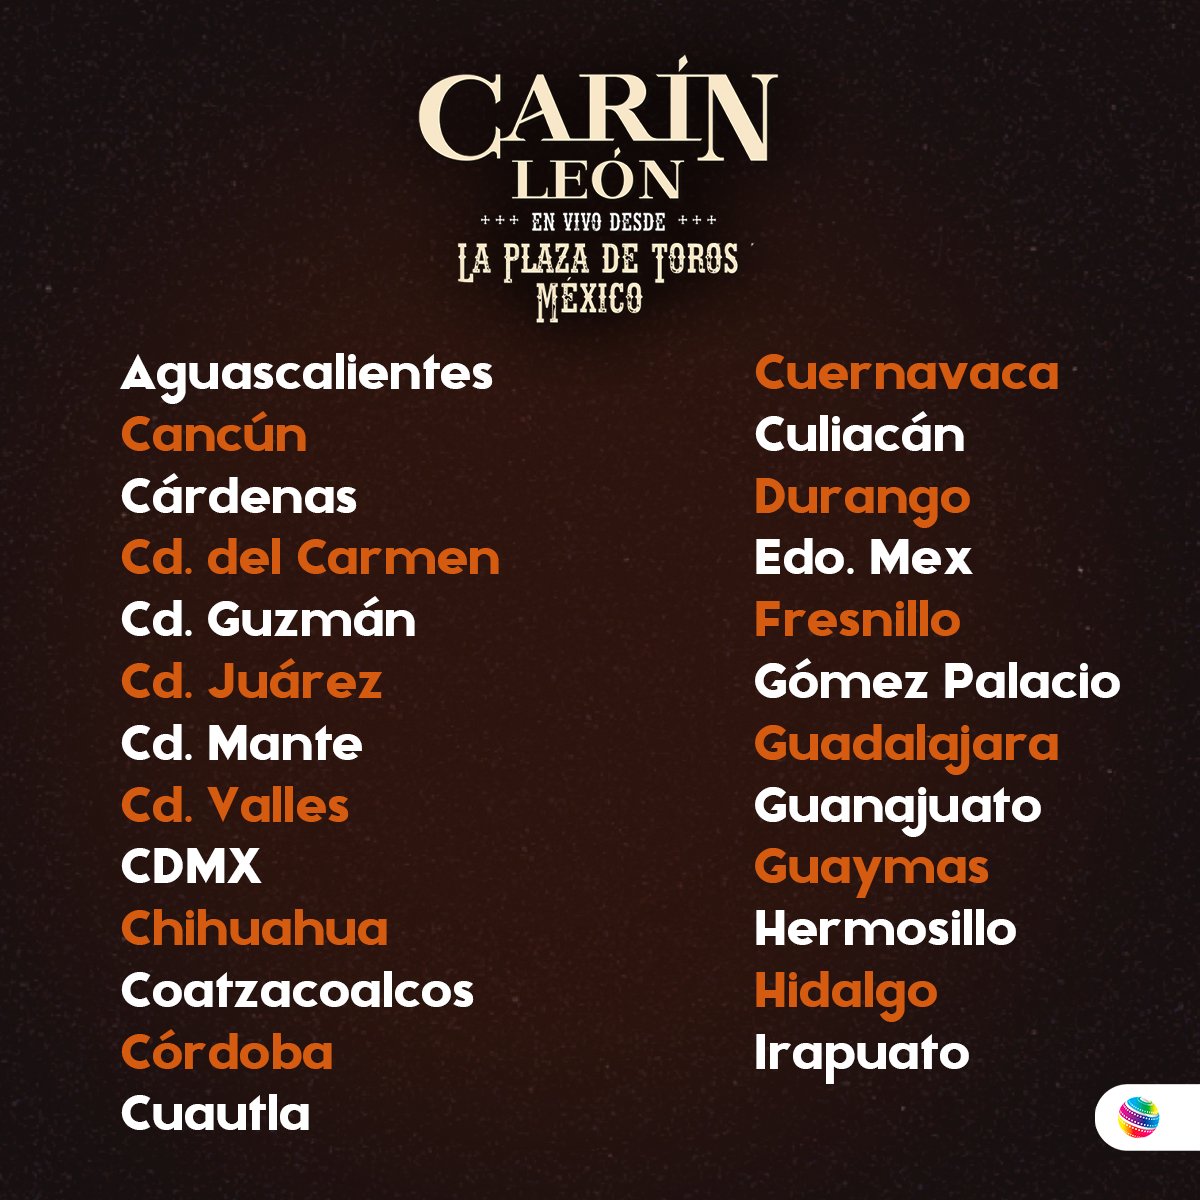 Carín León